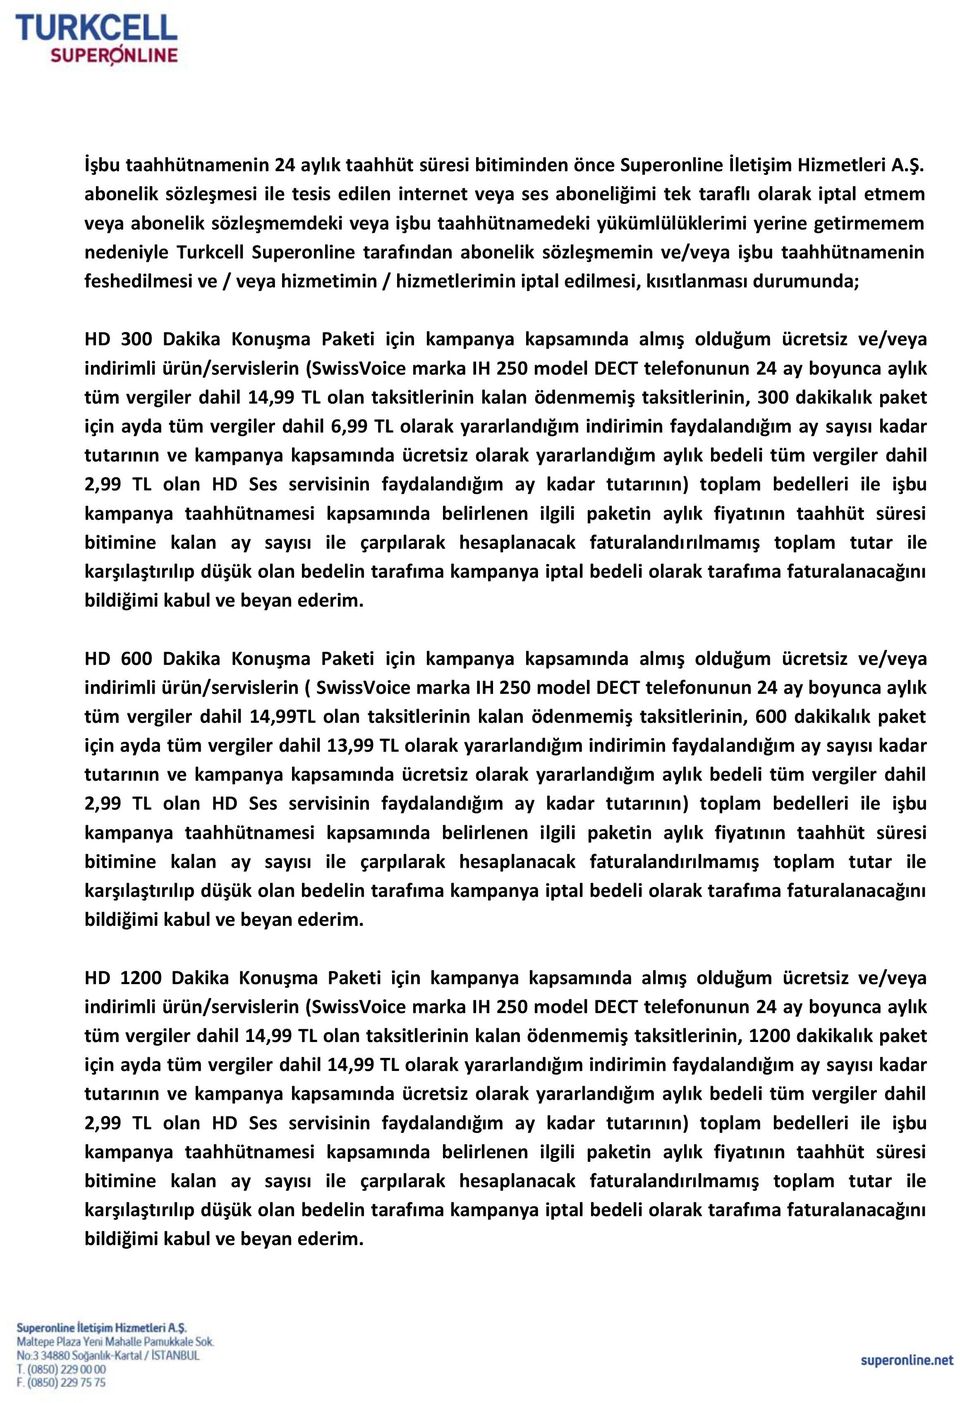 Turkcell Superonline tarafından abonelik sözleşmemin ve/veya işbu taahhütnamenin feshedilmesi ve / veya hizmetimin / hizmetlerimin iptal edilmesi, kısıtlanması durumunda; HD 300 Dakika için kampanya